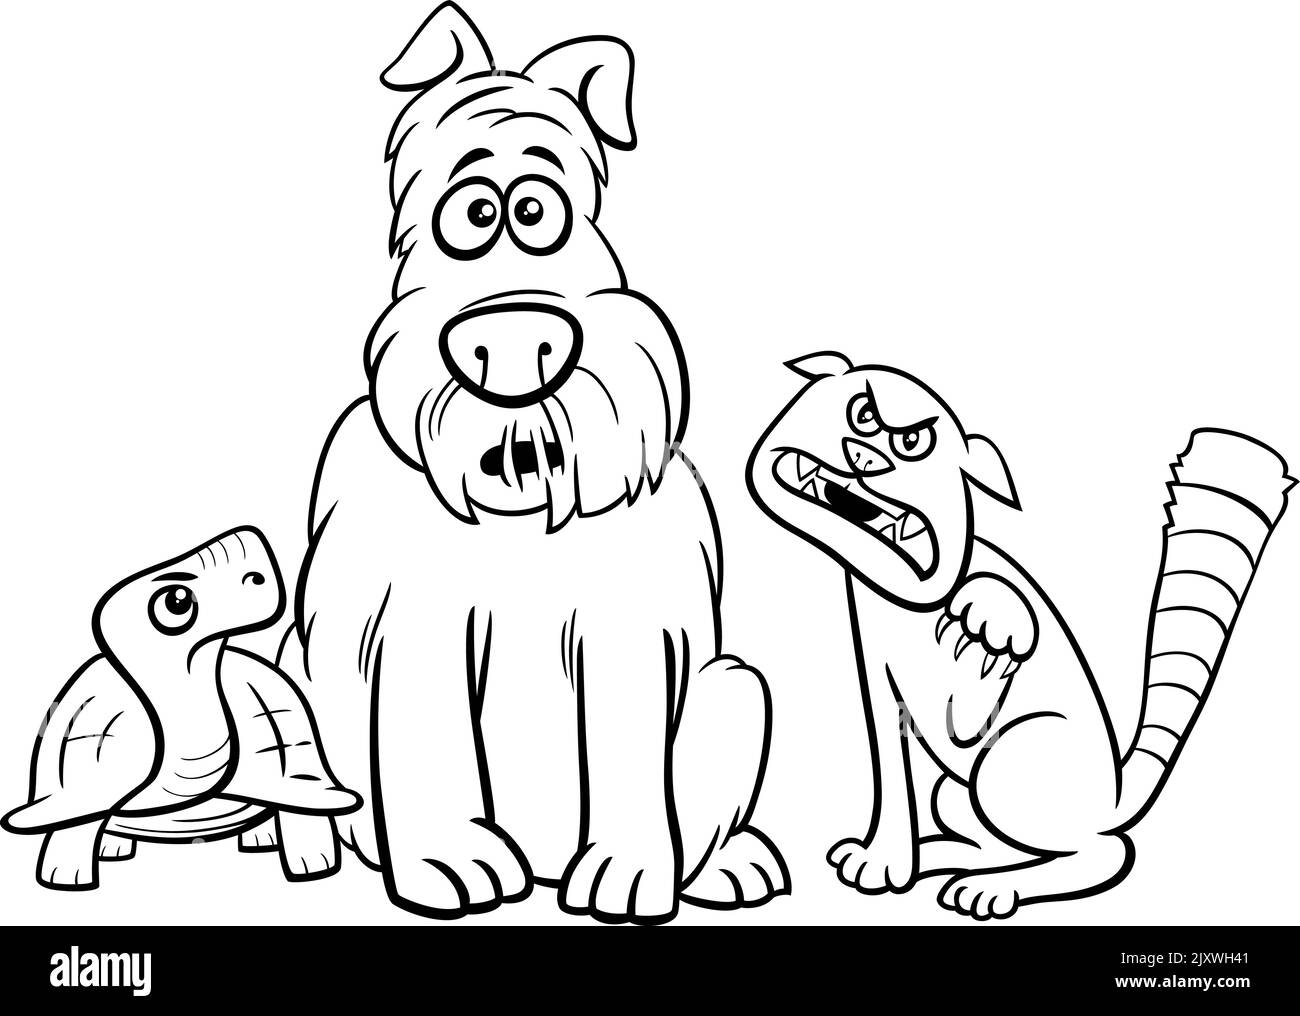 Cartoni animati in bianco e nero illustrazione di un personaggio divertente animale cane con pagina di colorazione gatto e tartaruga Illustrazione Vettoriale